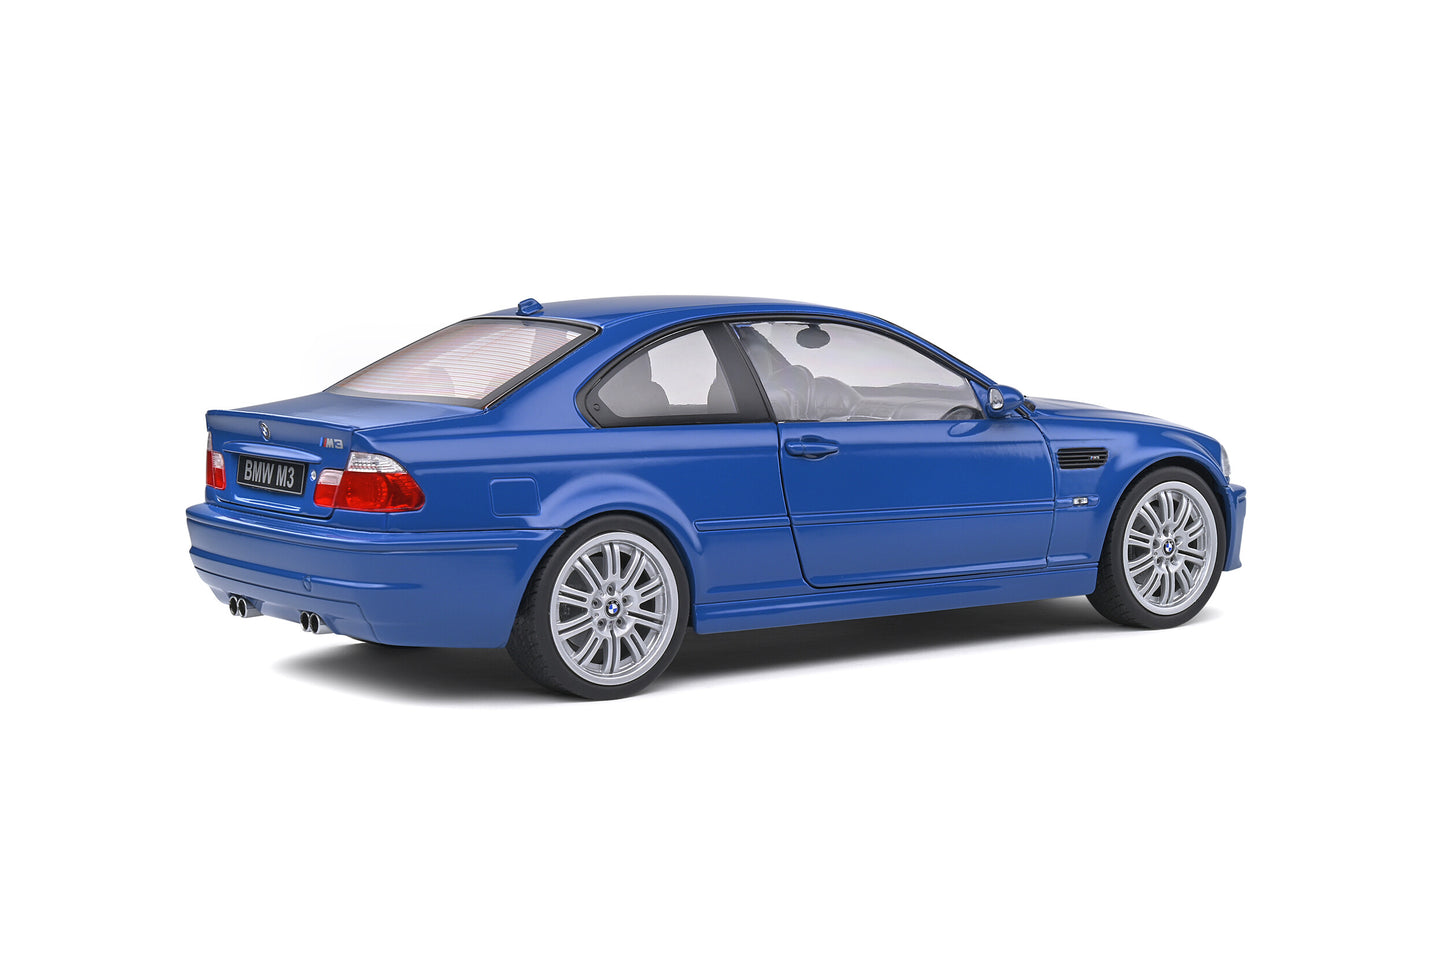 1:18 BMW M3 E46, 2000, blå, Solido 1806502, delvis åben model